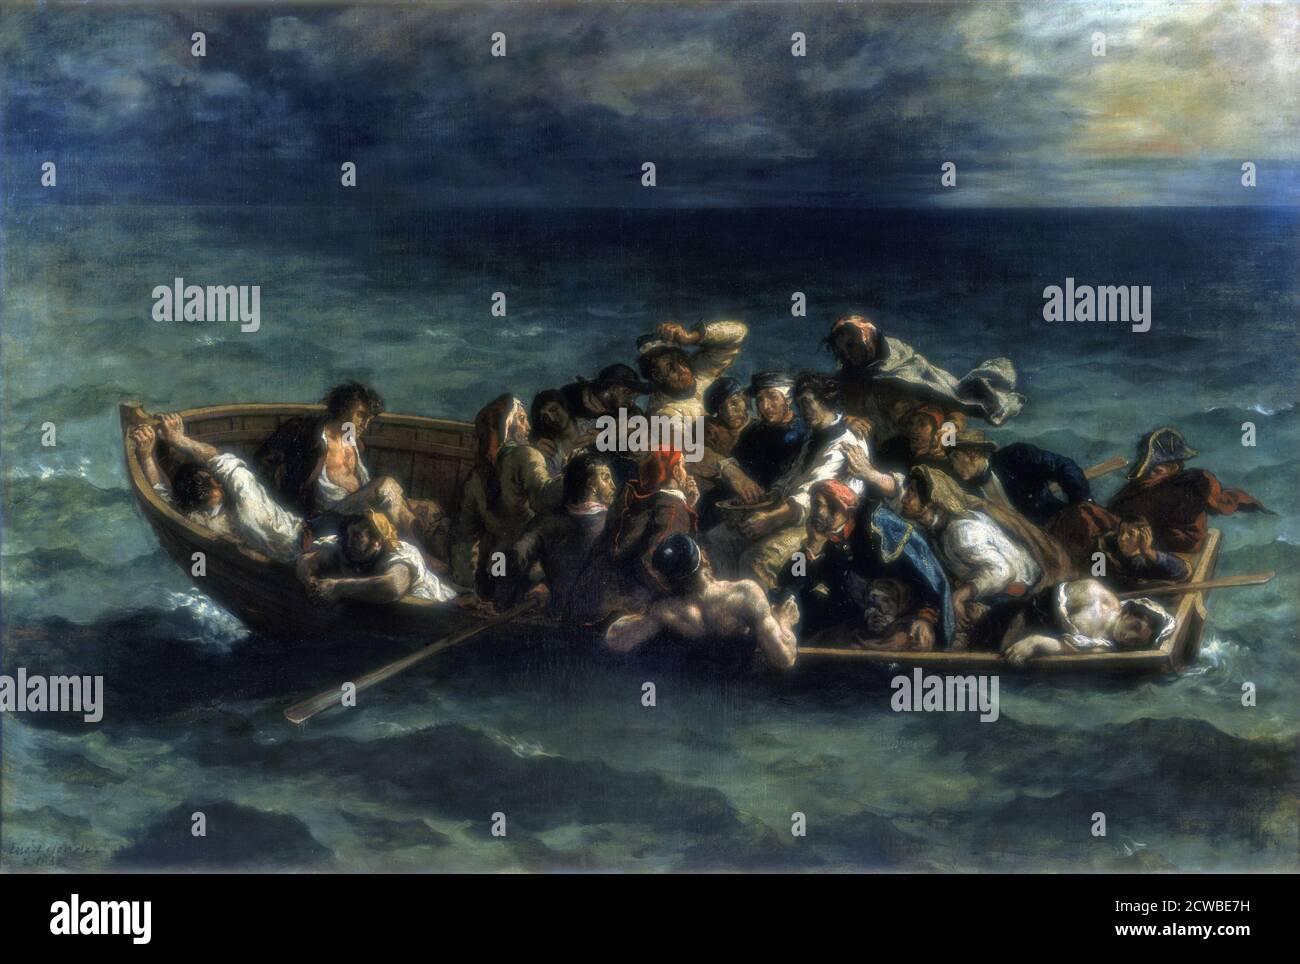 The Shipwreck of Don Juan', 1840. Artist: Eugene Delacroix. Delacroix was a French Romantic artist regarded as the leader of the French Romantic school. Stock Photo